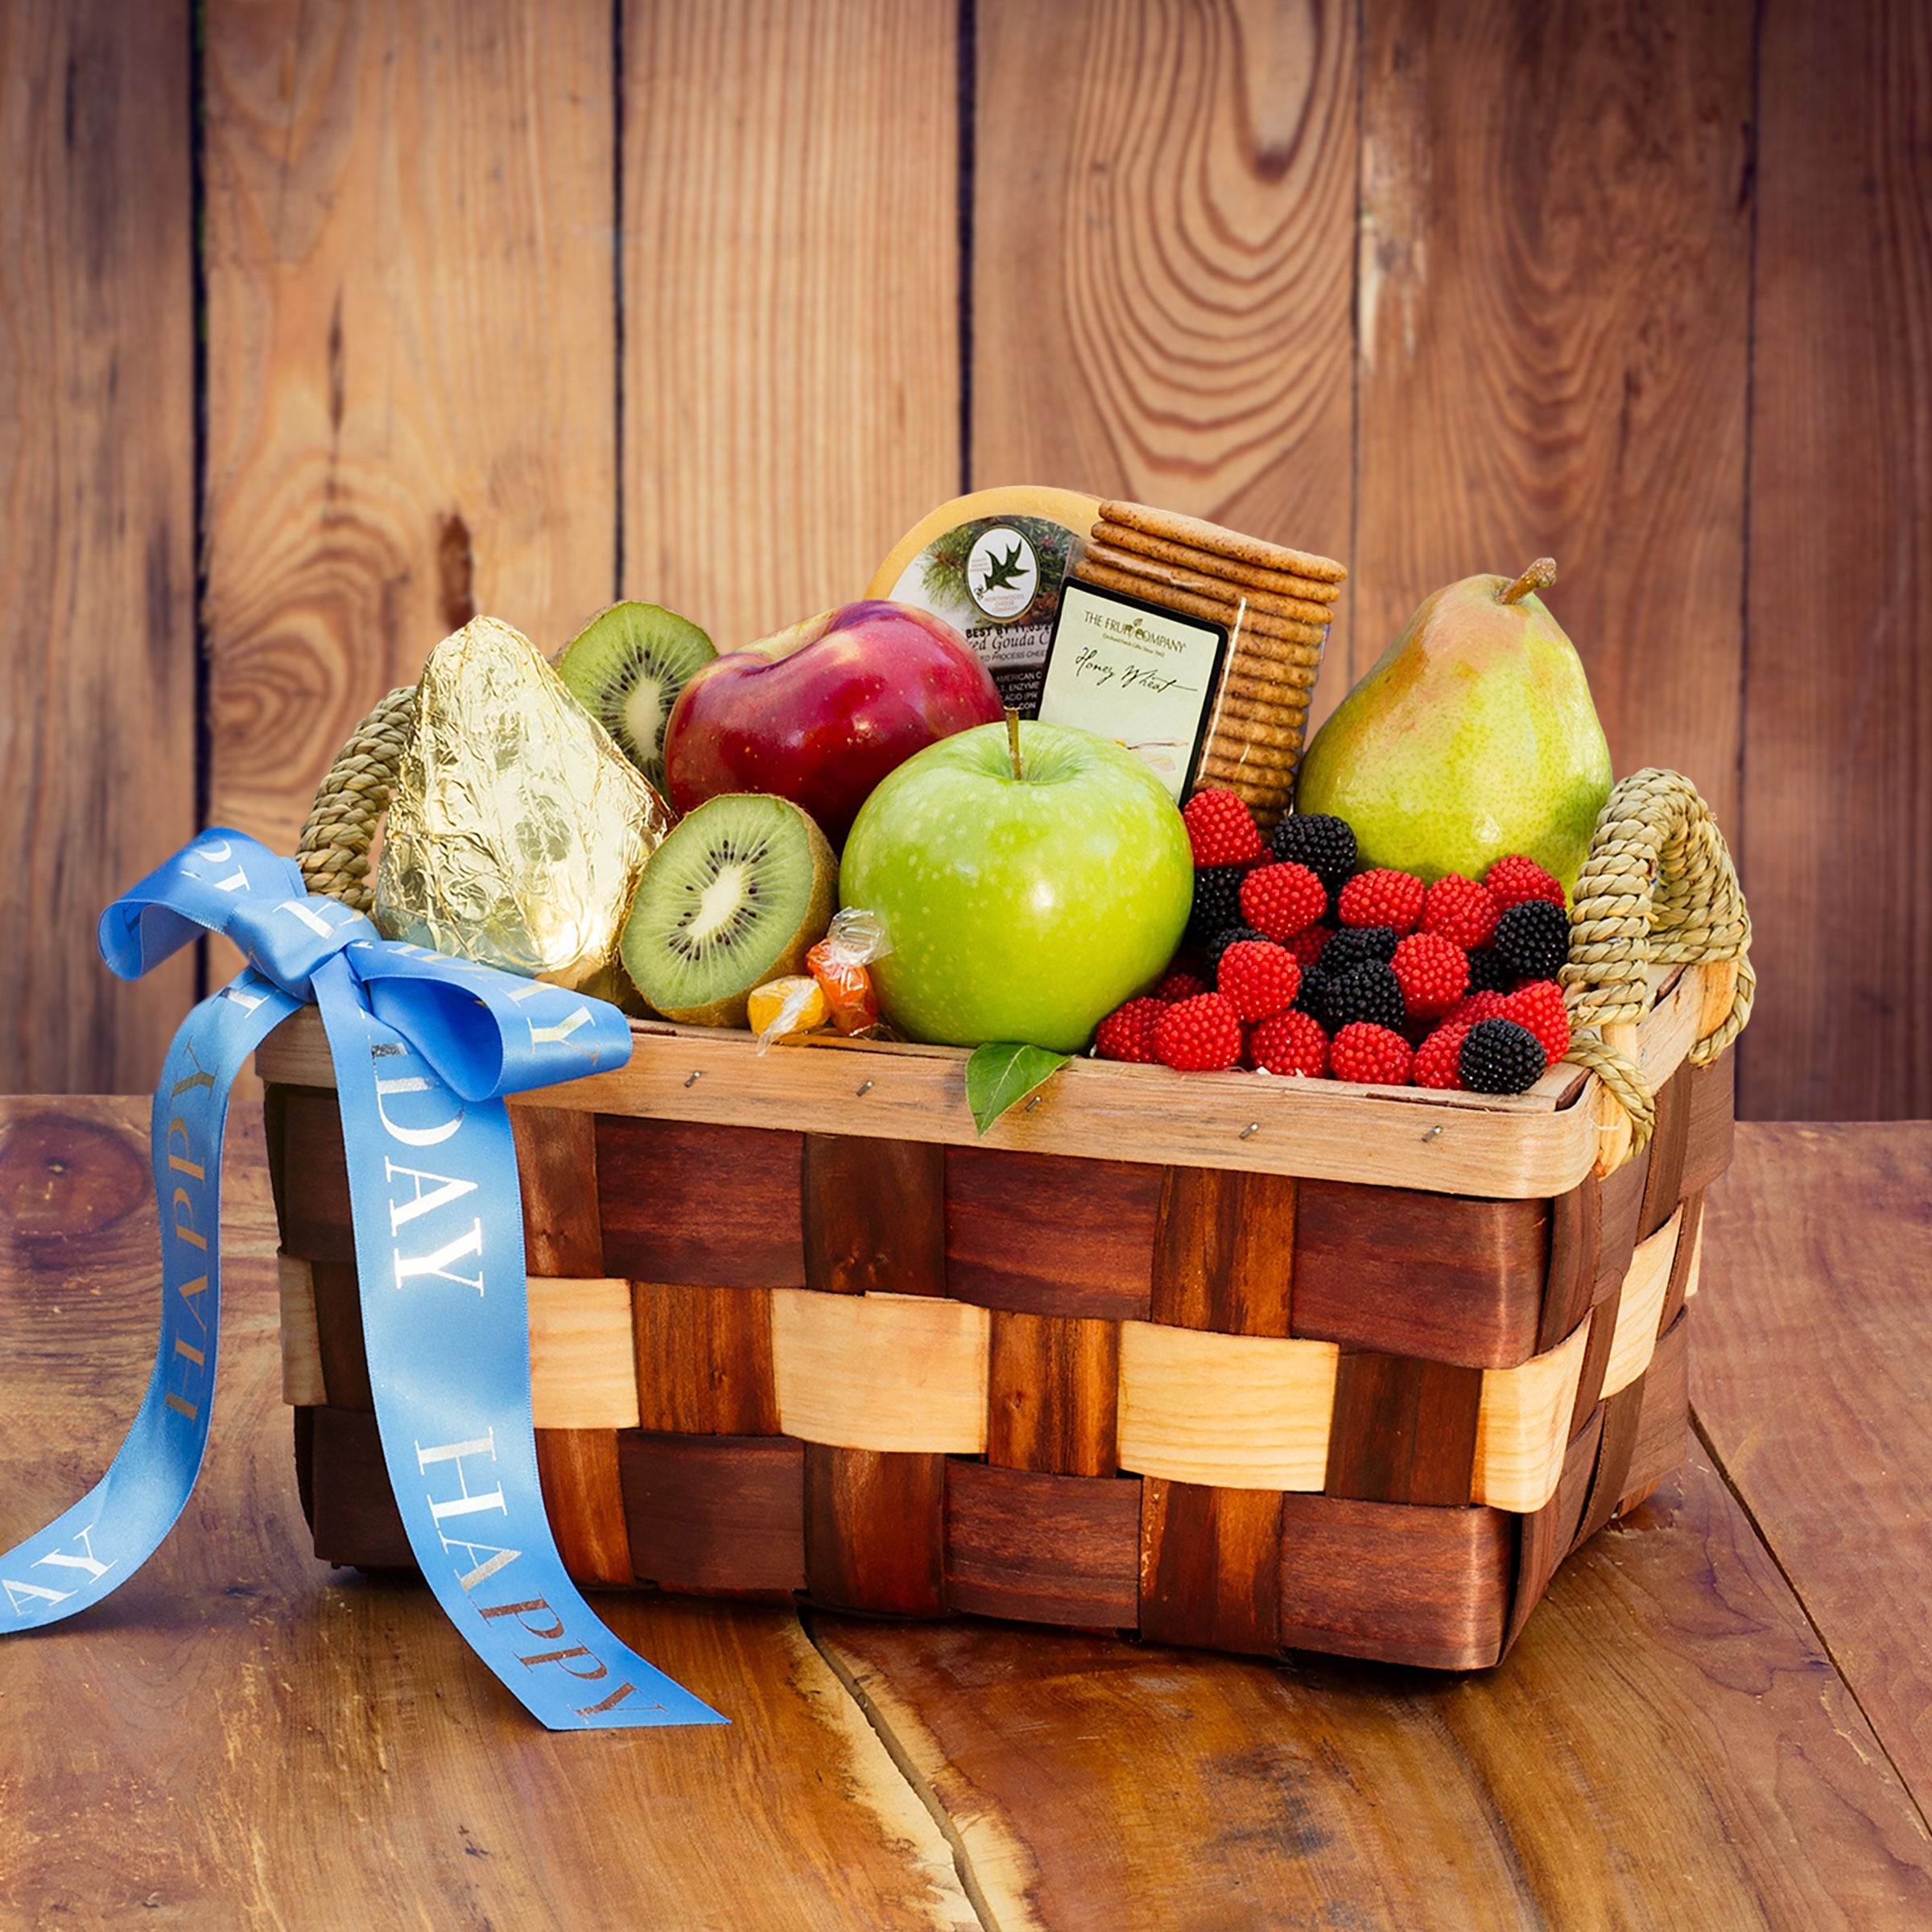 The Fruit Company "Happy Birthday" Fruit Basket Image